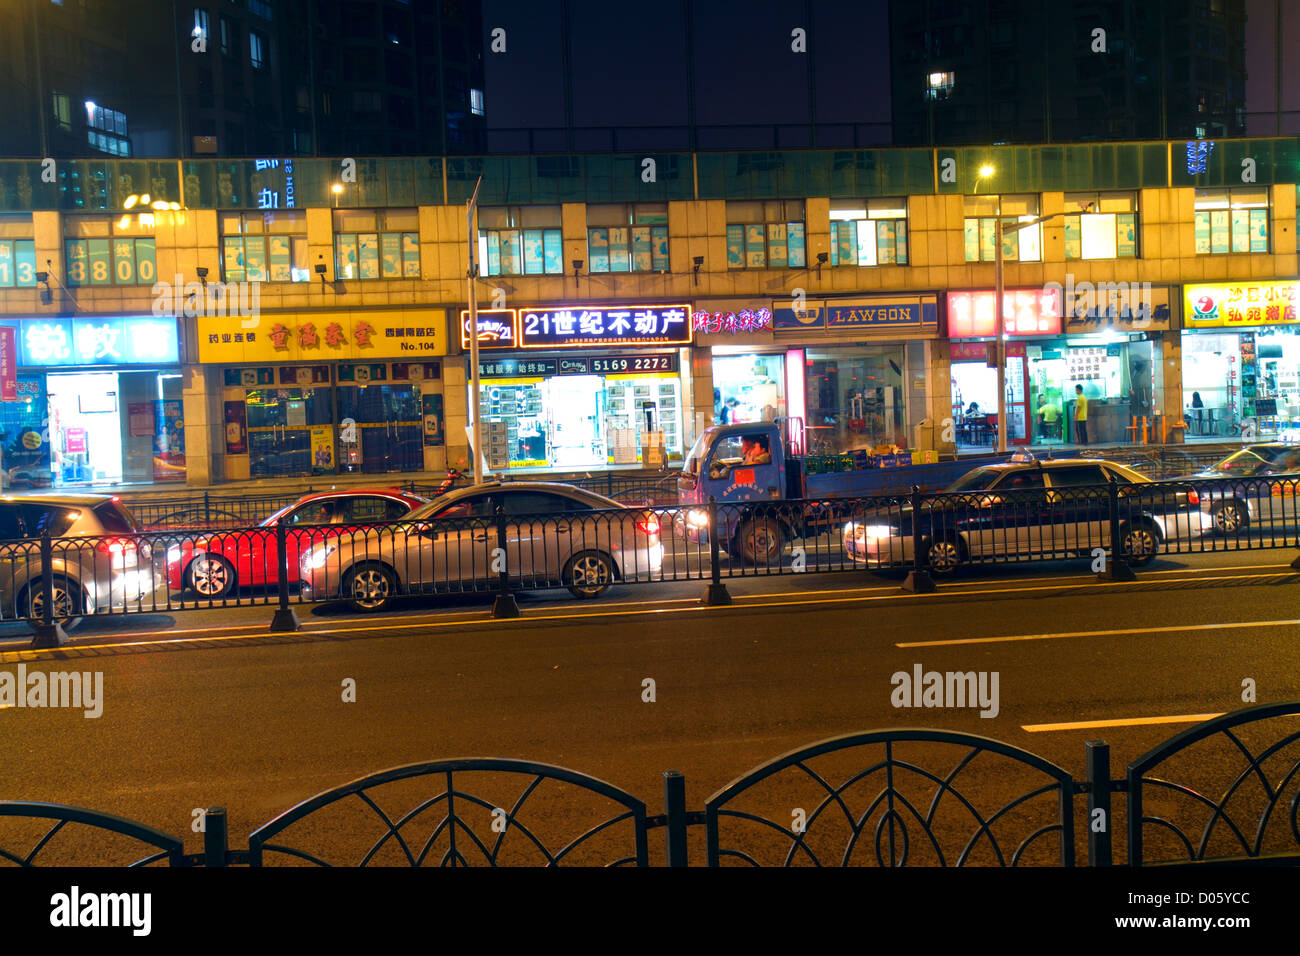 Shanghai China,Distrito Chino Huangpu,Calle Sur Xizang,Mandarin,hanzi,caracteres,símbolos,pequeñas empresas,distrito,tráfico,noche,China121006178 Foto de stock